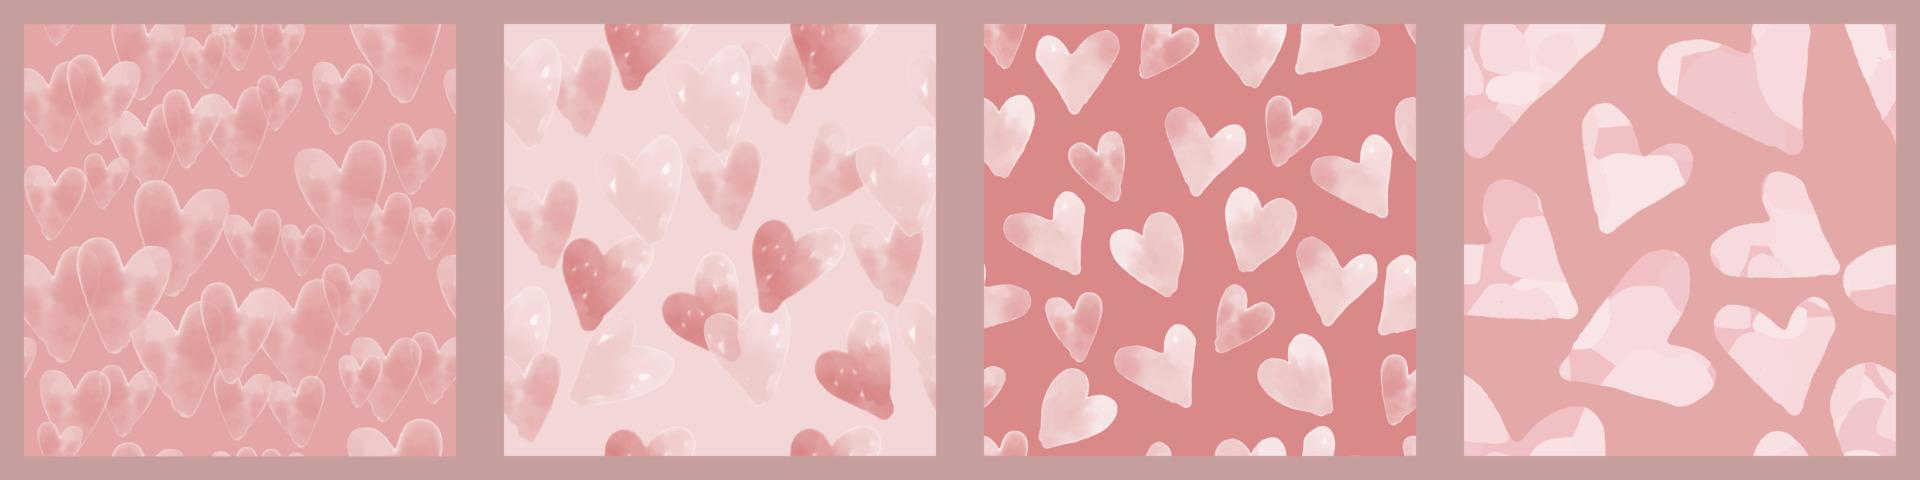 sömlös blandad rosa hjärta mönster bakgrund vektor